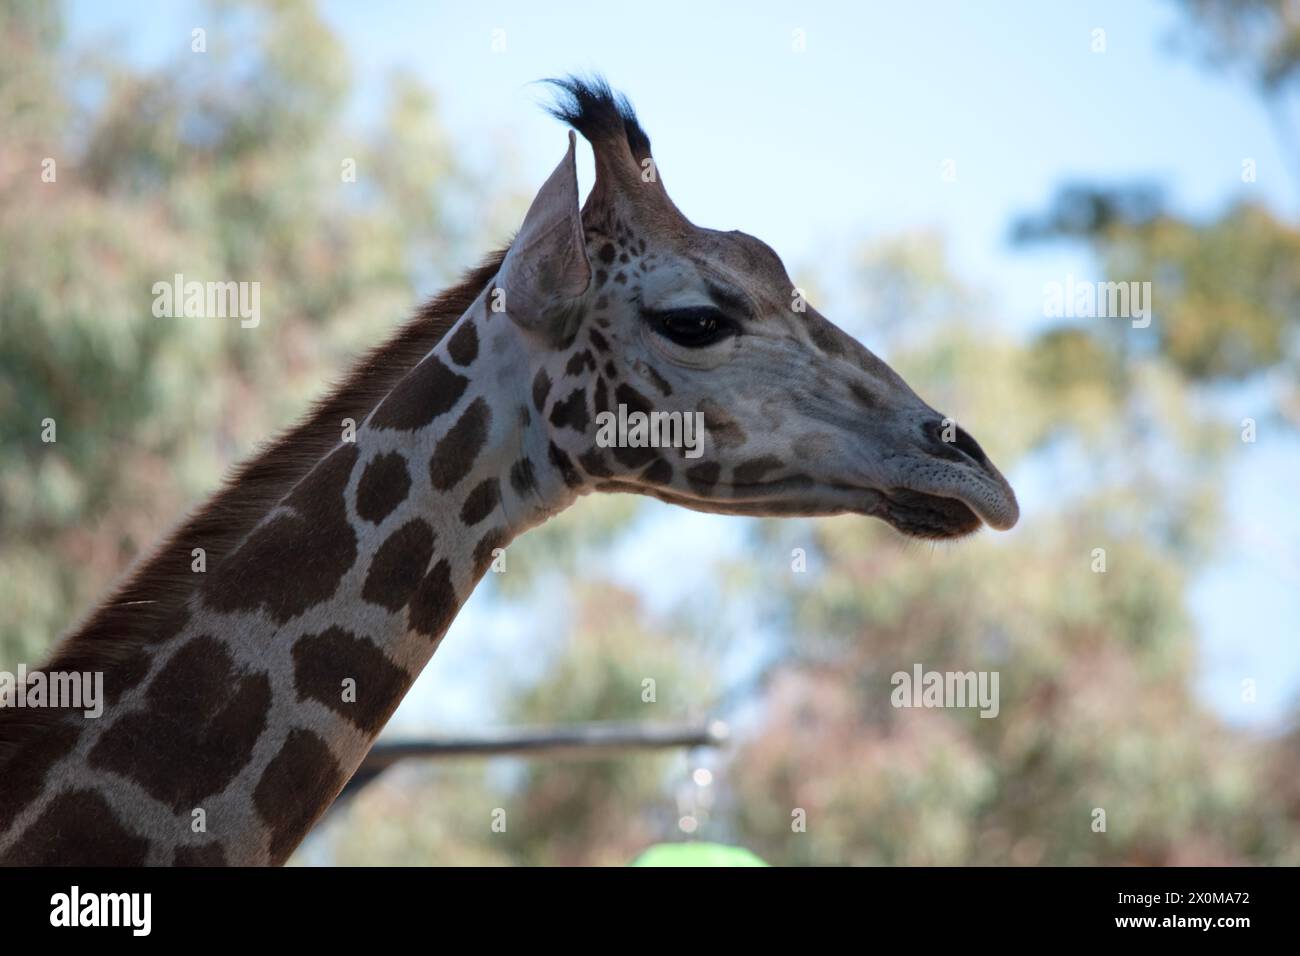 La girafe est le plus grand de tous les mammifères. La girafe a un corps court, une queue touffetée, une crinière courte et de courtes cornes recouvertes de peau. Banque D'Images